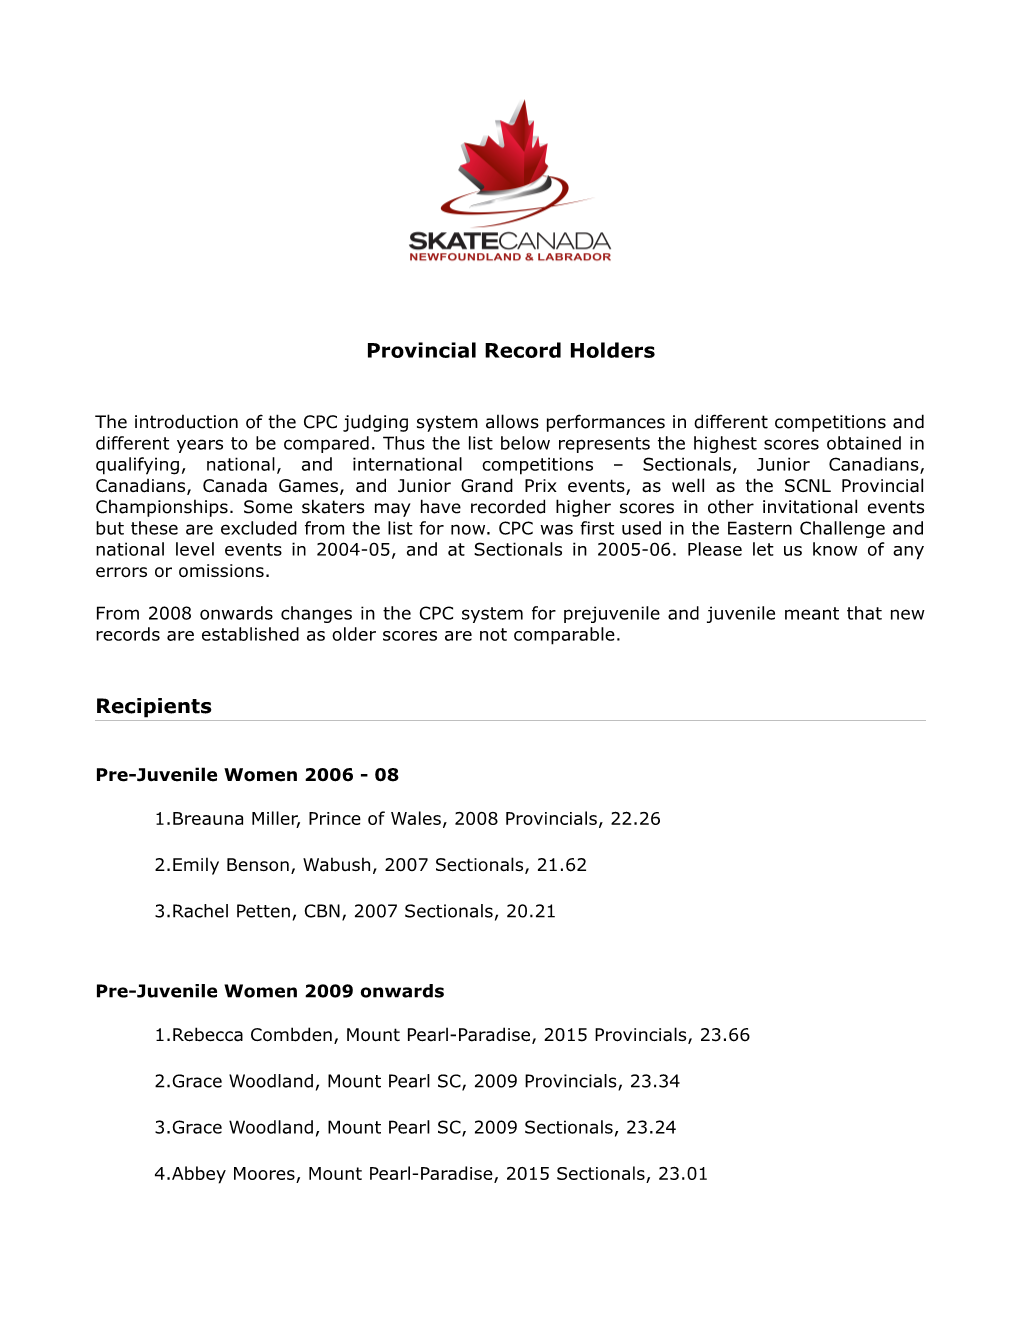 Provincial Record Holders Recipients